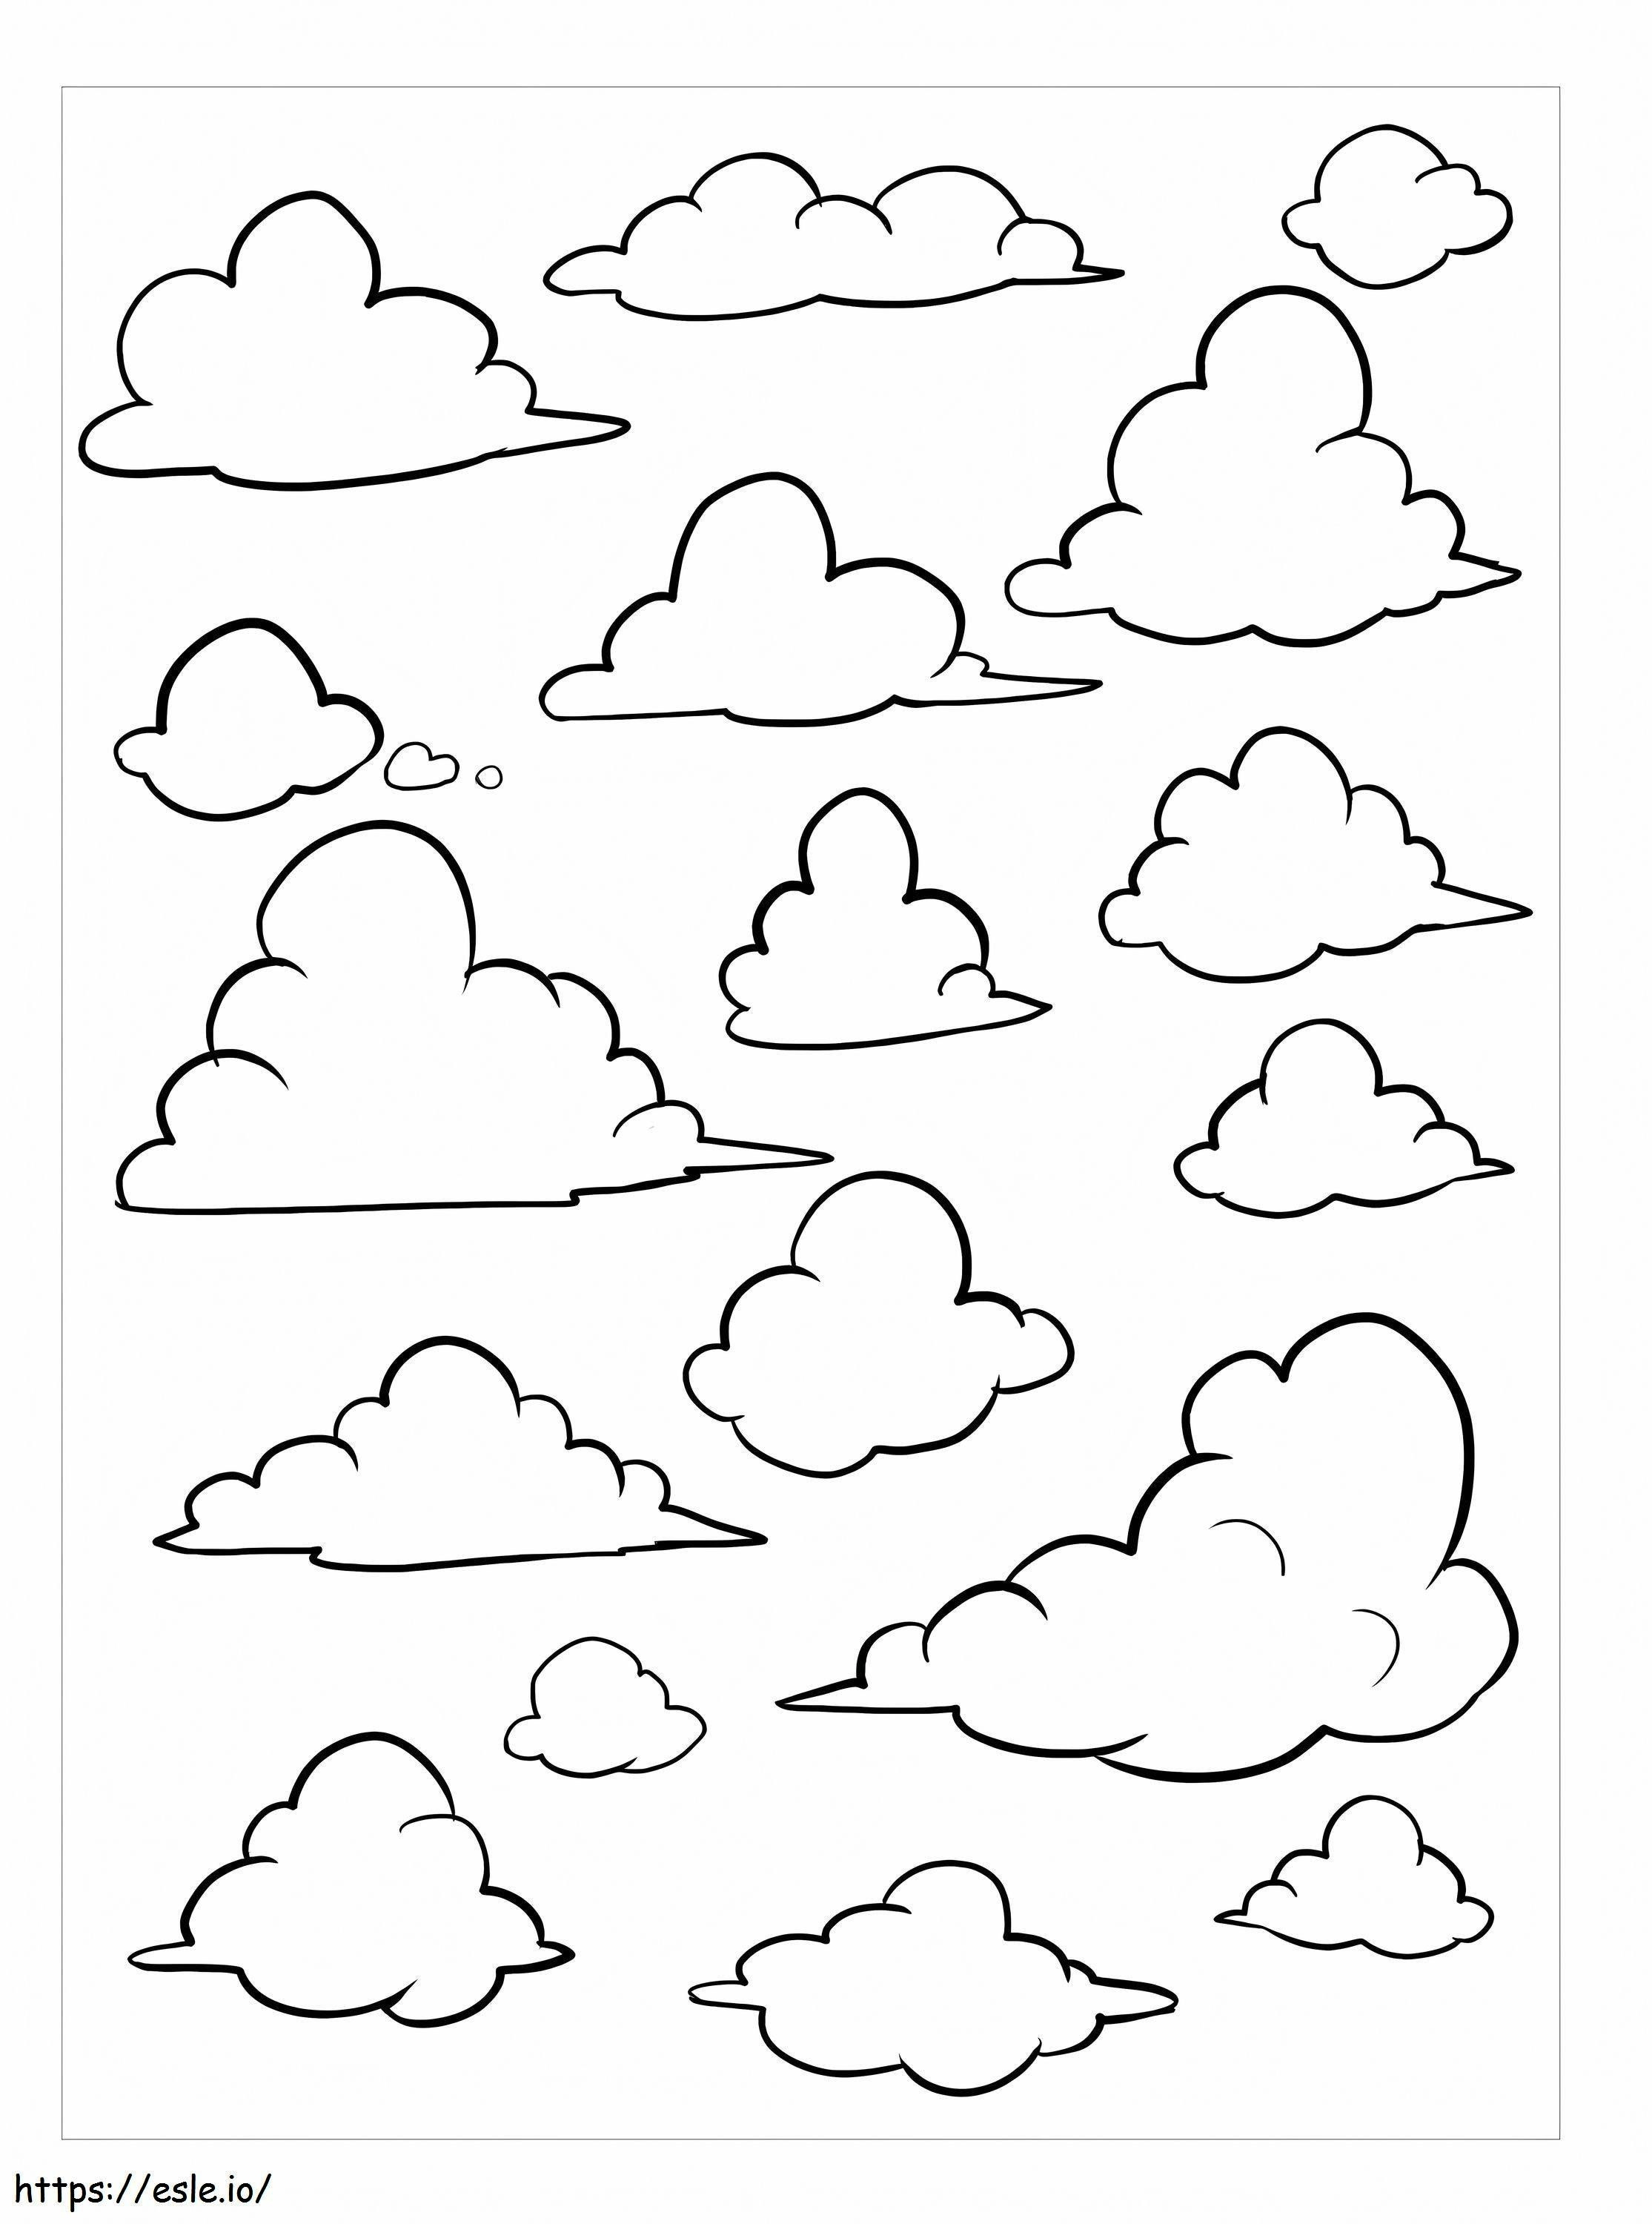 Grundlegende Arten von Wolken ausmalbilder